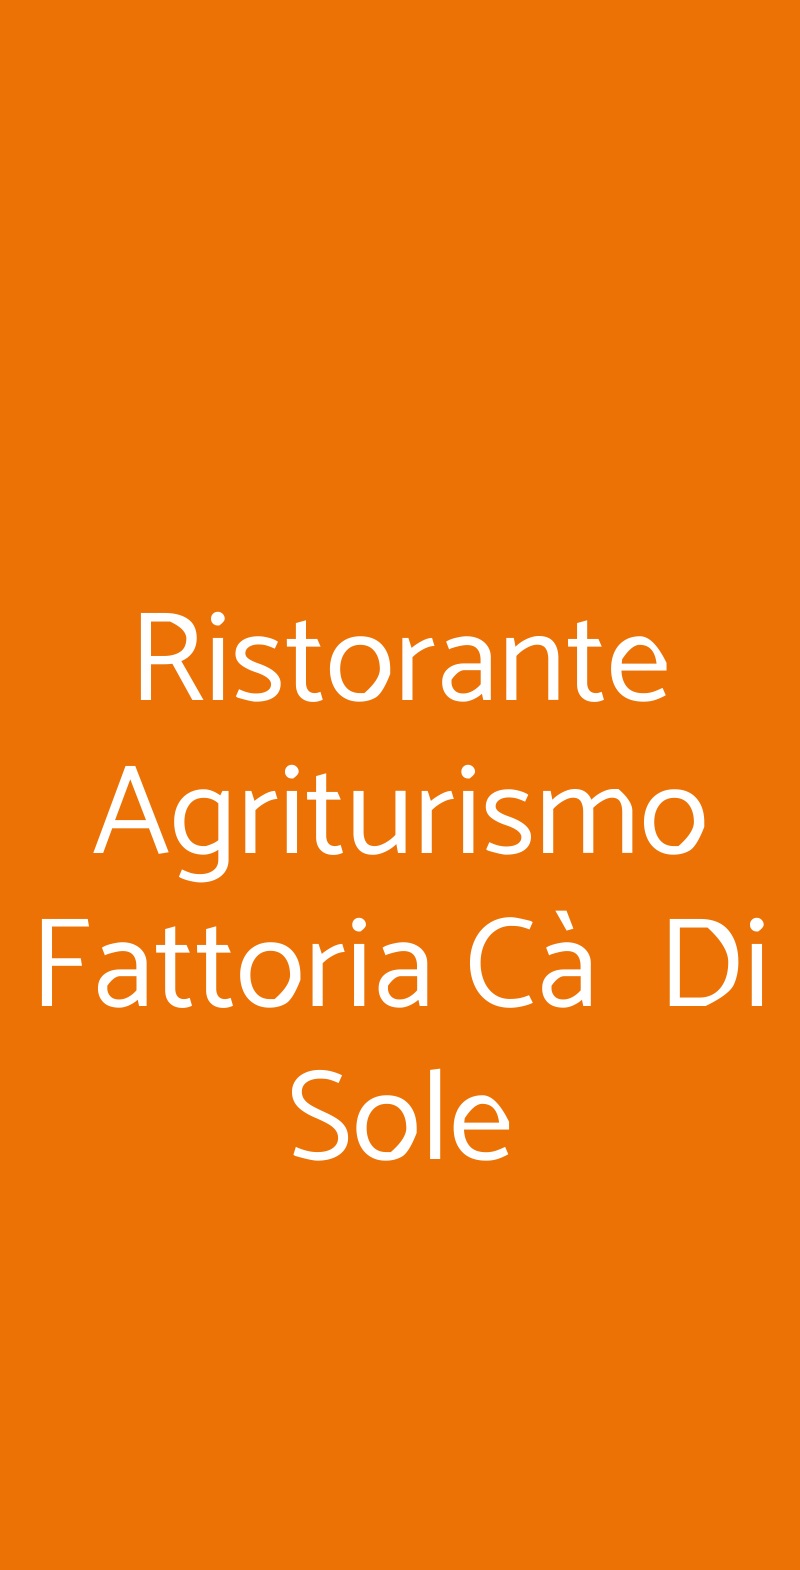 Ristorante Agriturismo Fattoria Cà  Di Sole San Benedetto Val di Sambro menù 1 pagina